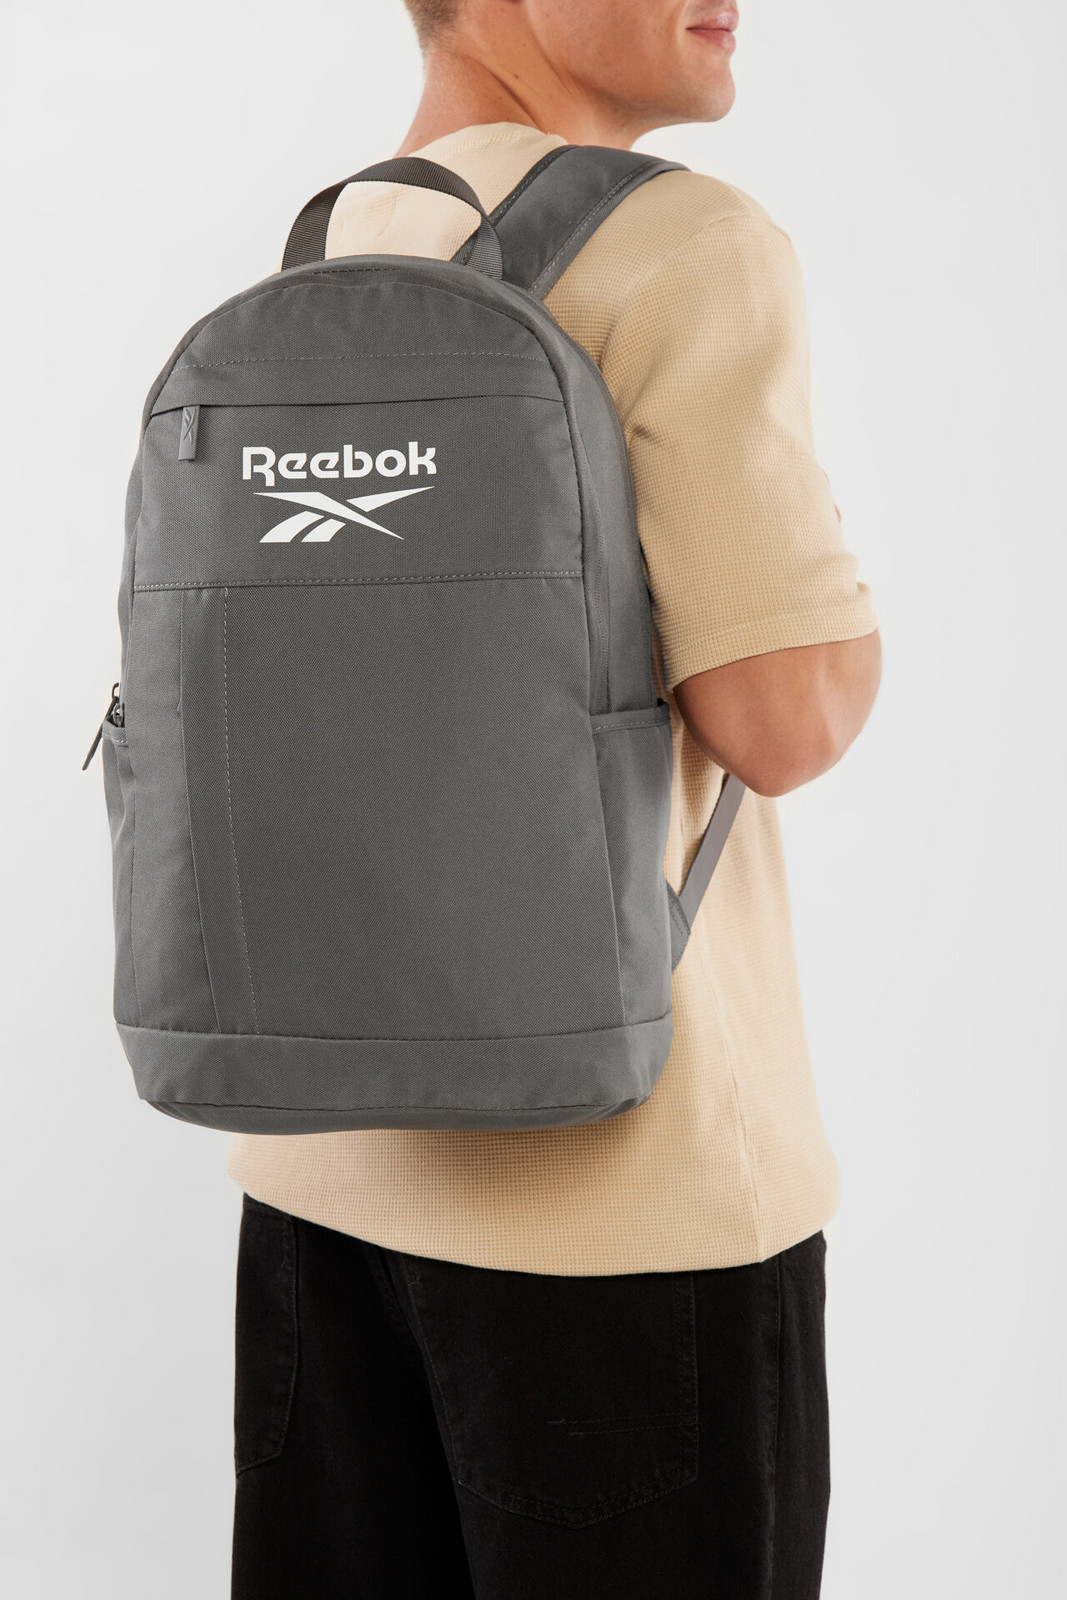 Batohy a tašky Reebok RBK-042-CCC-05